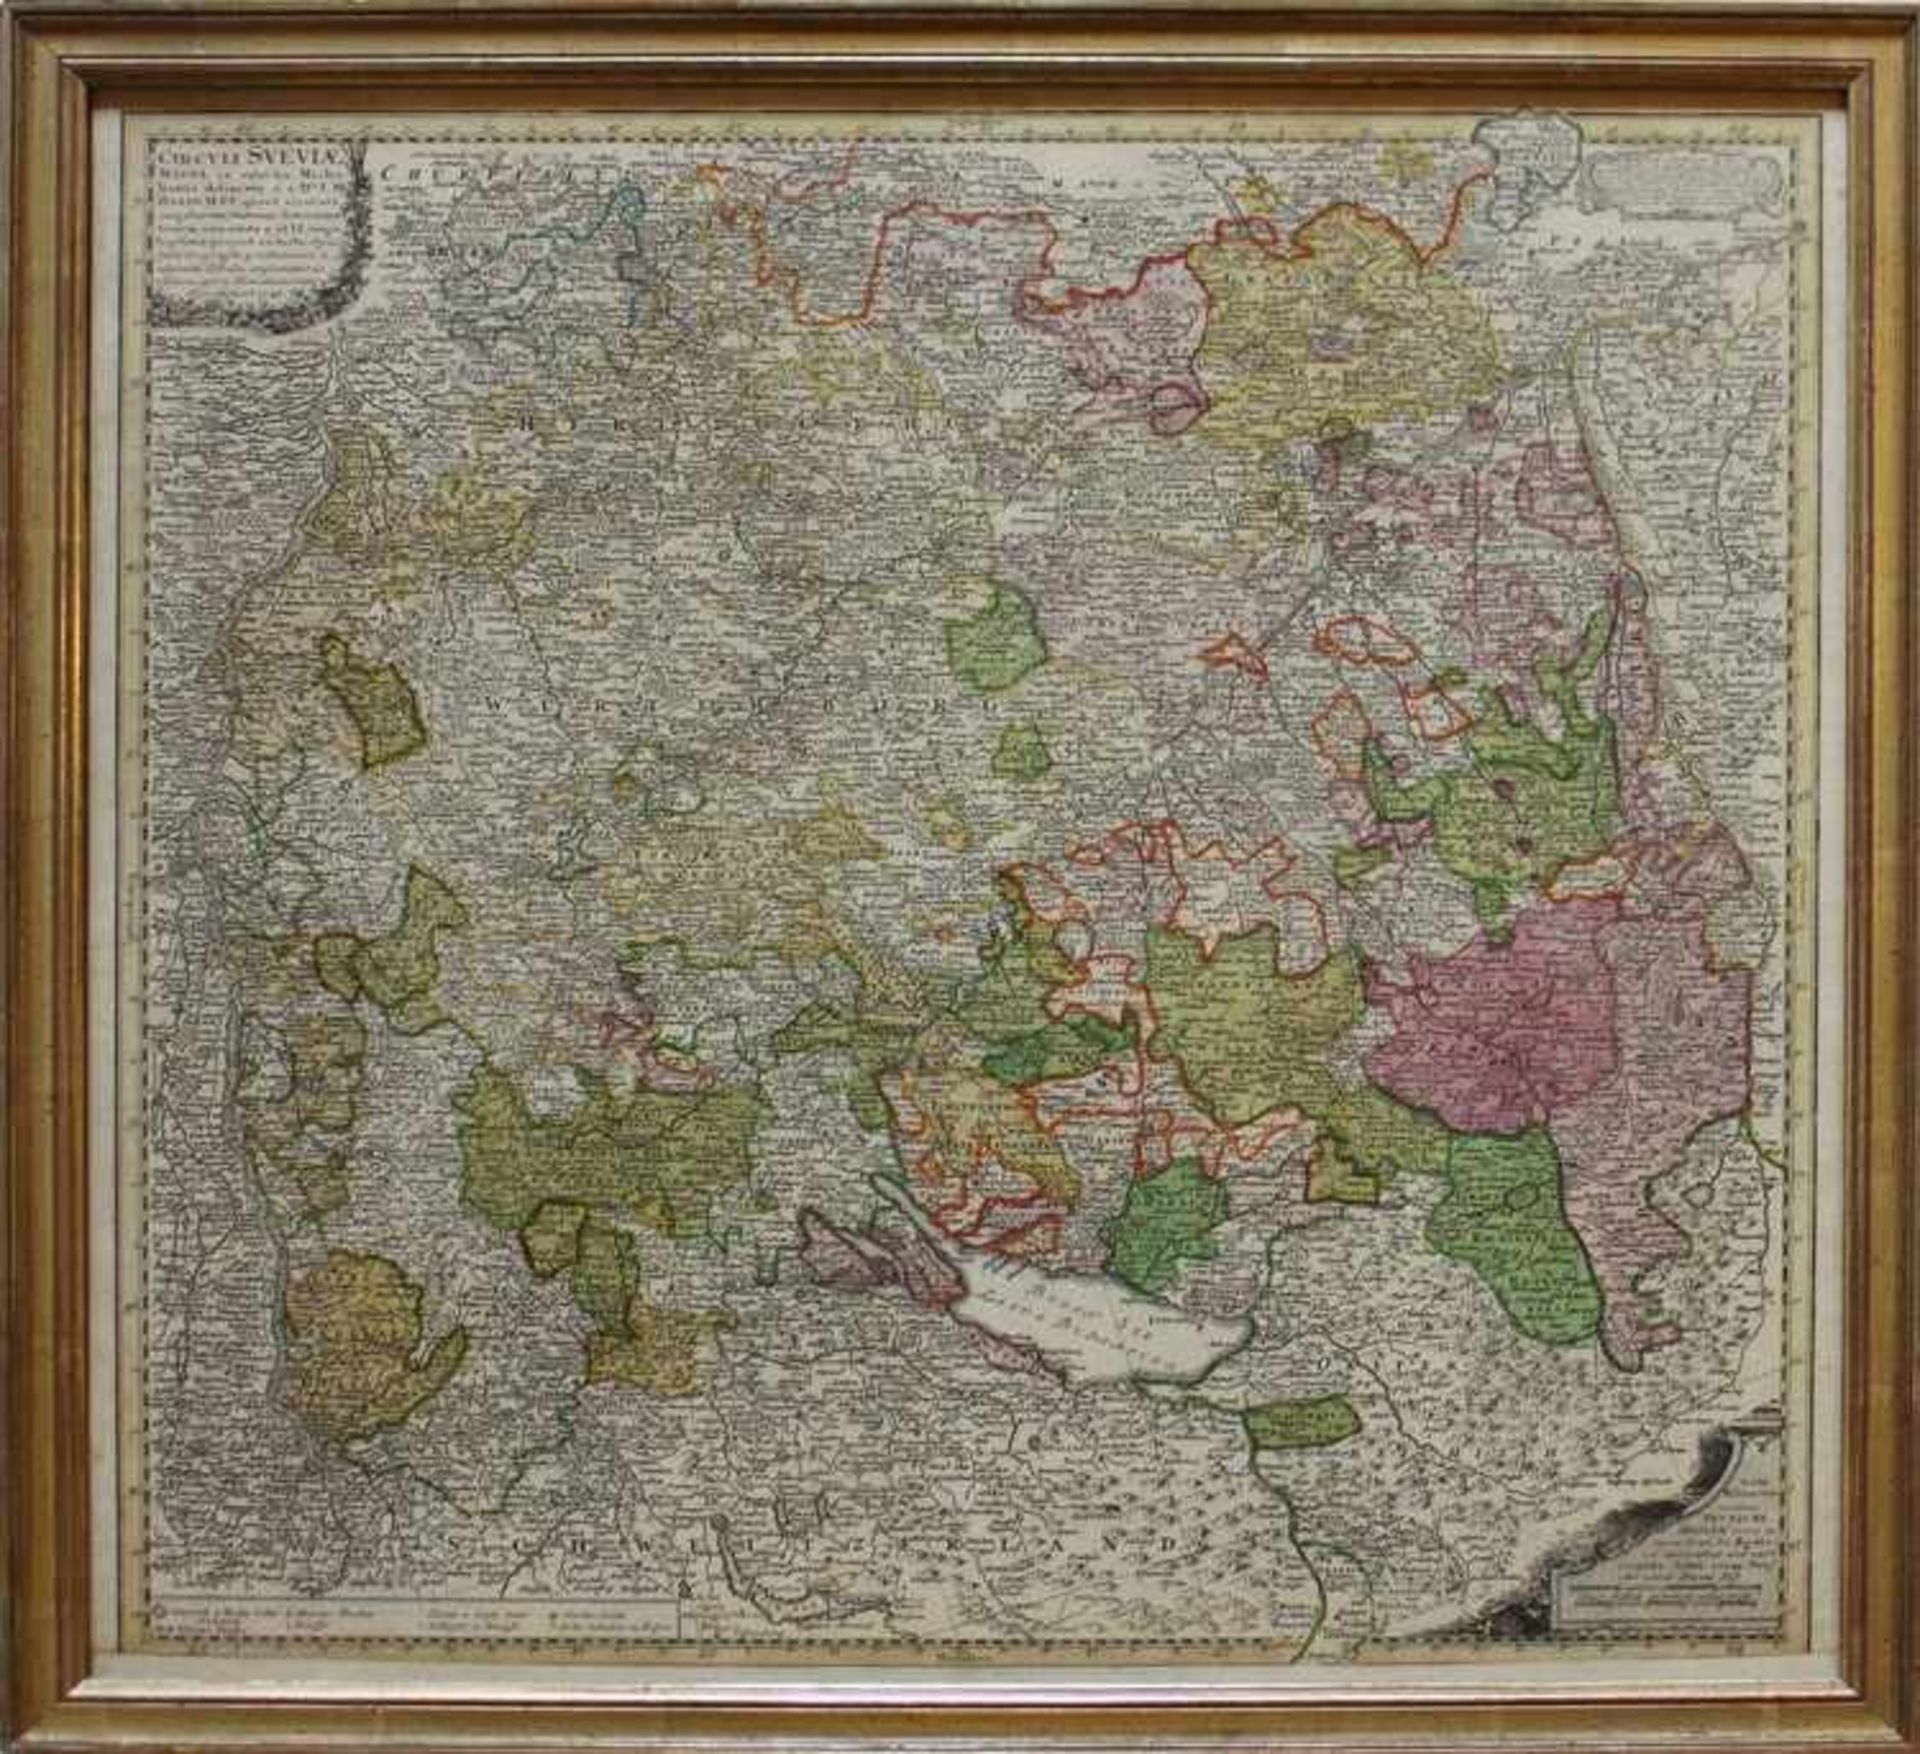 Homann - Schwäbischer Kreis"Circuli Sveviae. Mappa ex subsidijs Michalianis delinata", verlegt bei